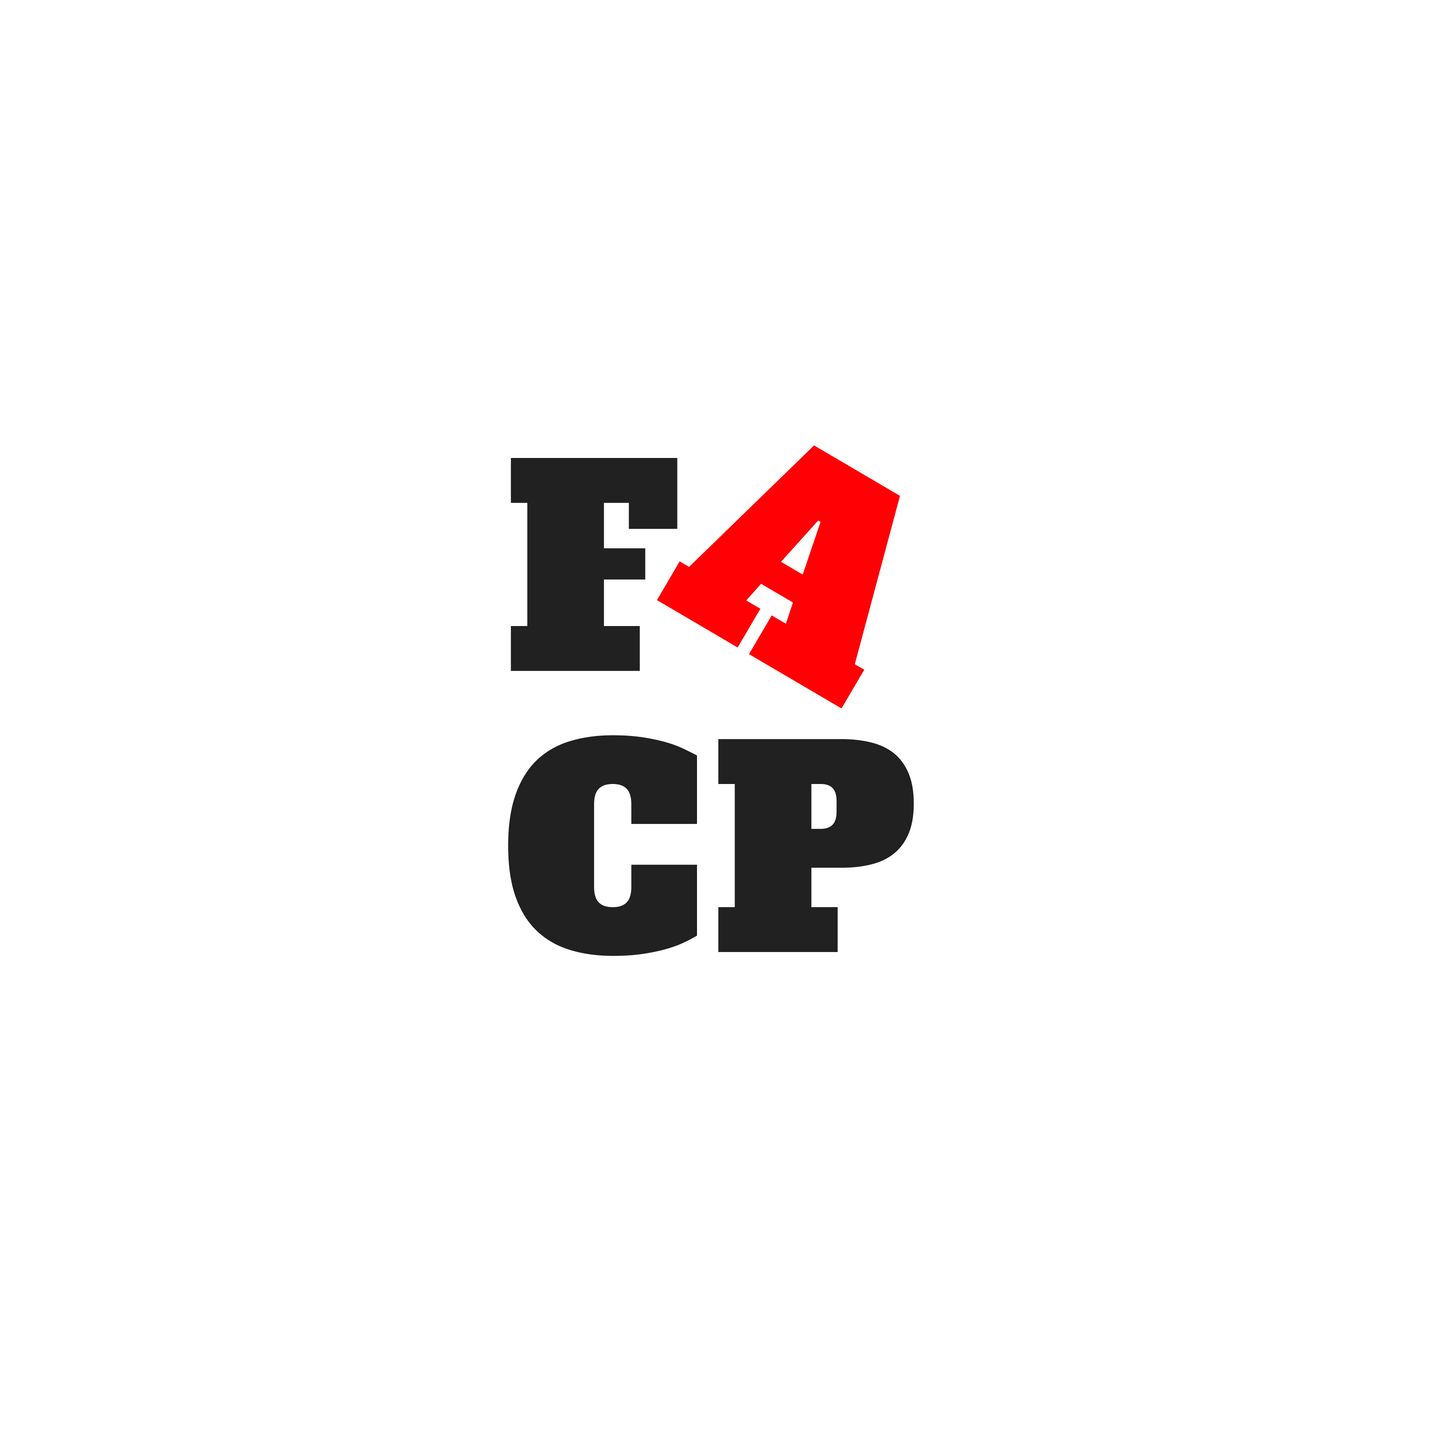 FACP EPISODE 1